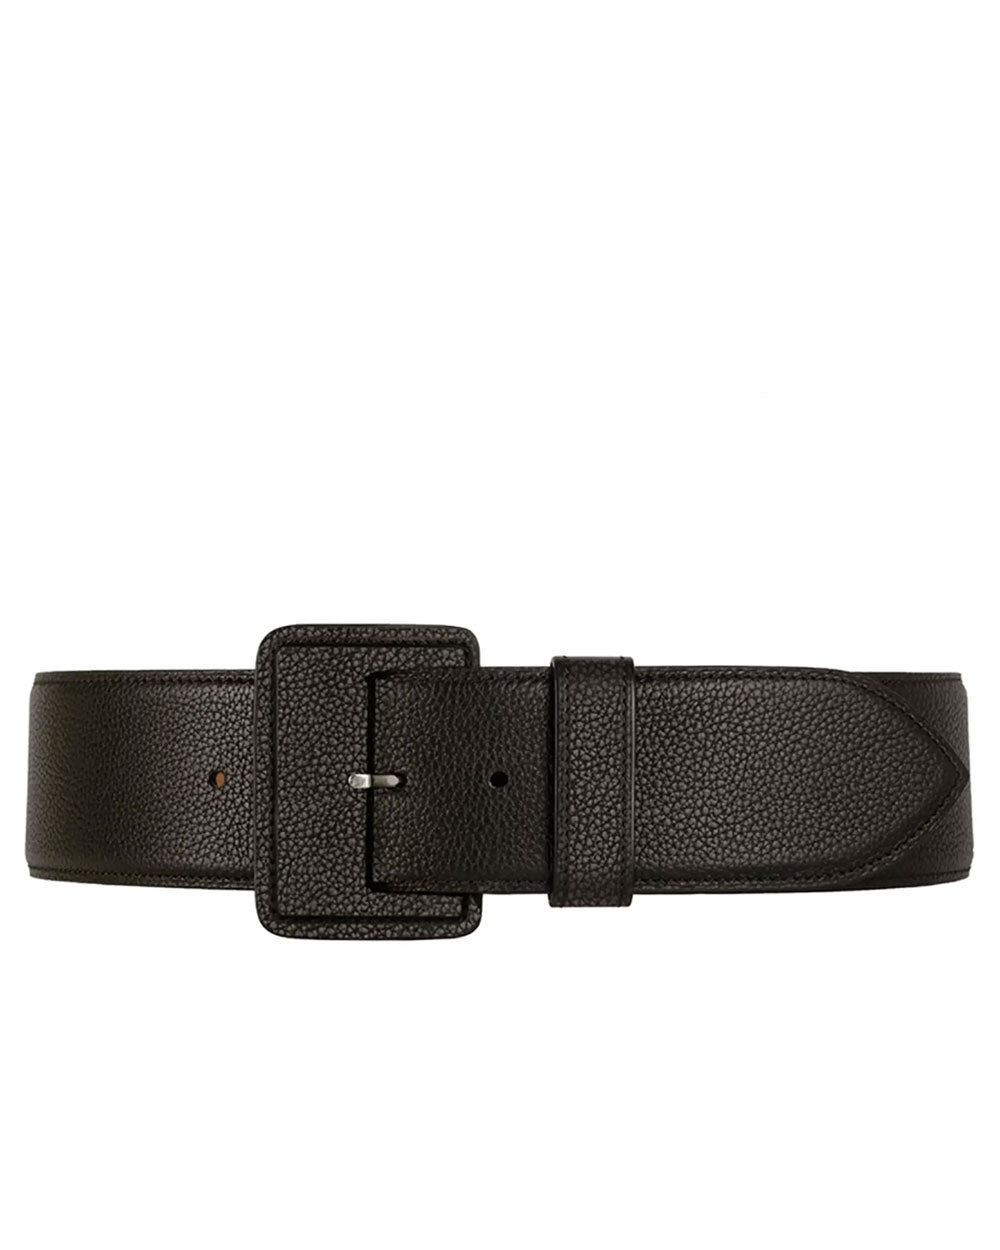 La Merveilleuse Large Leather Belt in Black